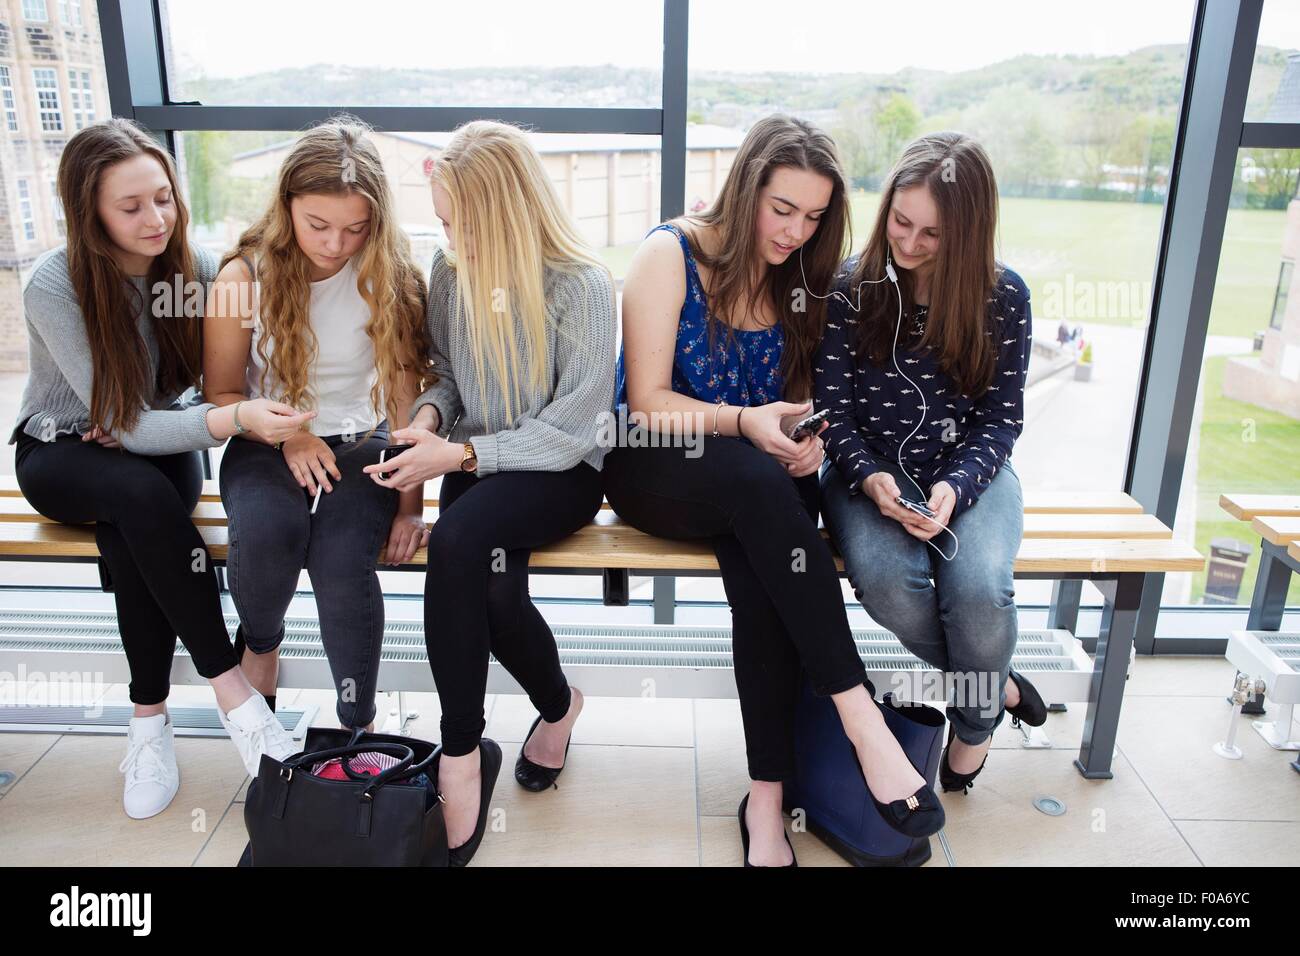 Les jeunes filles à l'aide du smartphone sur le banc Banque D'Images